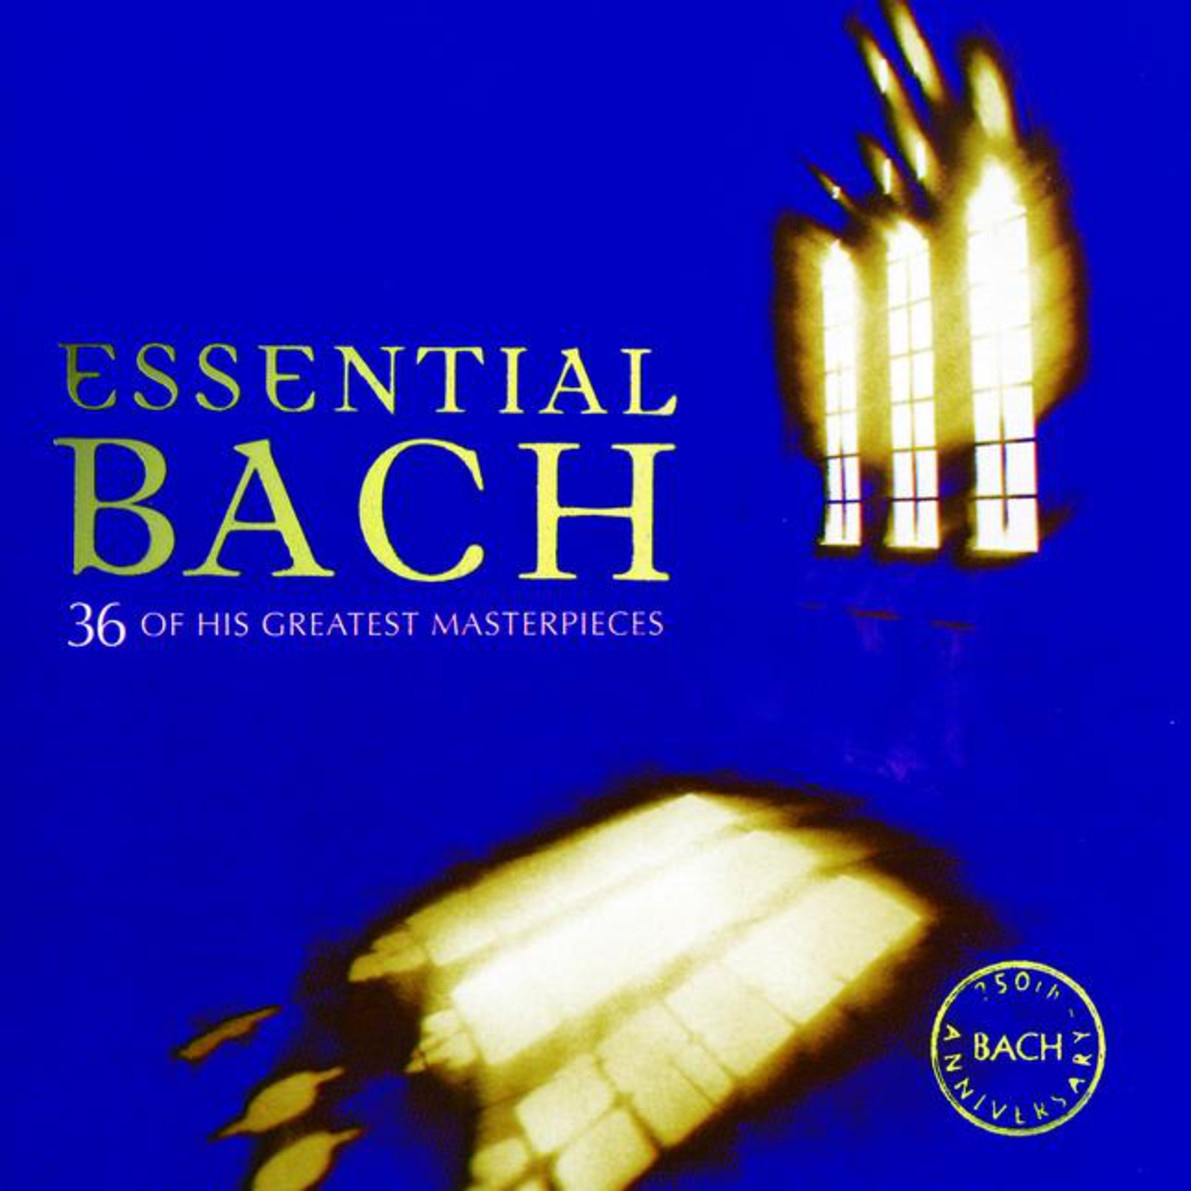 Das Wohltemperierte Klavier BWV846-869, Book One, No. 2 in C minor BWV847: Fugue